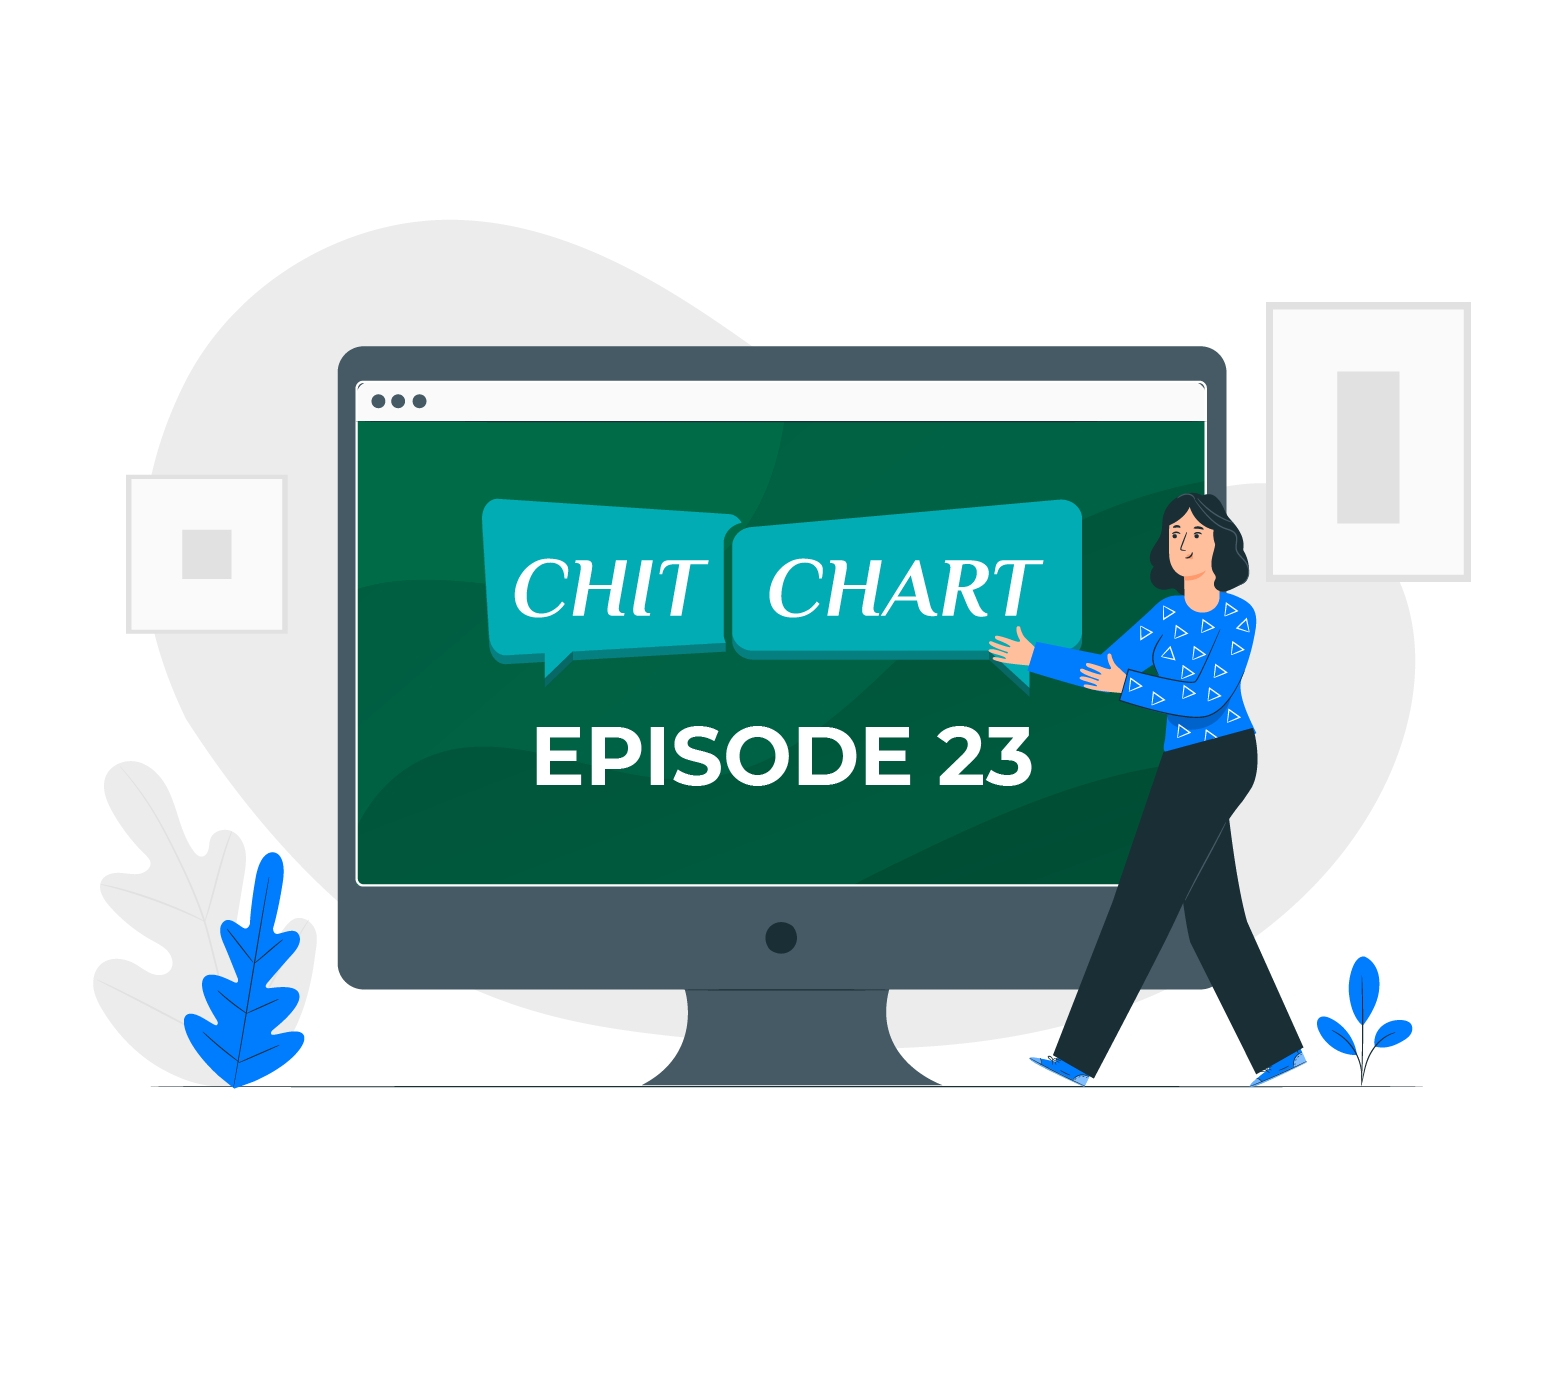 ChitChaRt : Episode 23